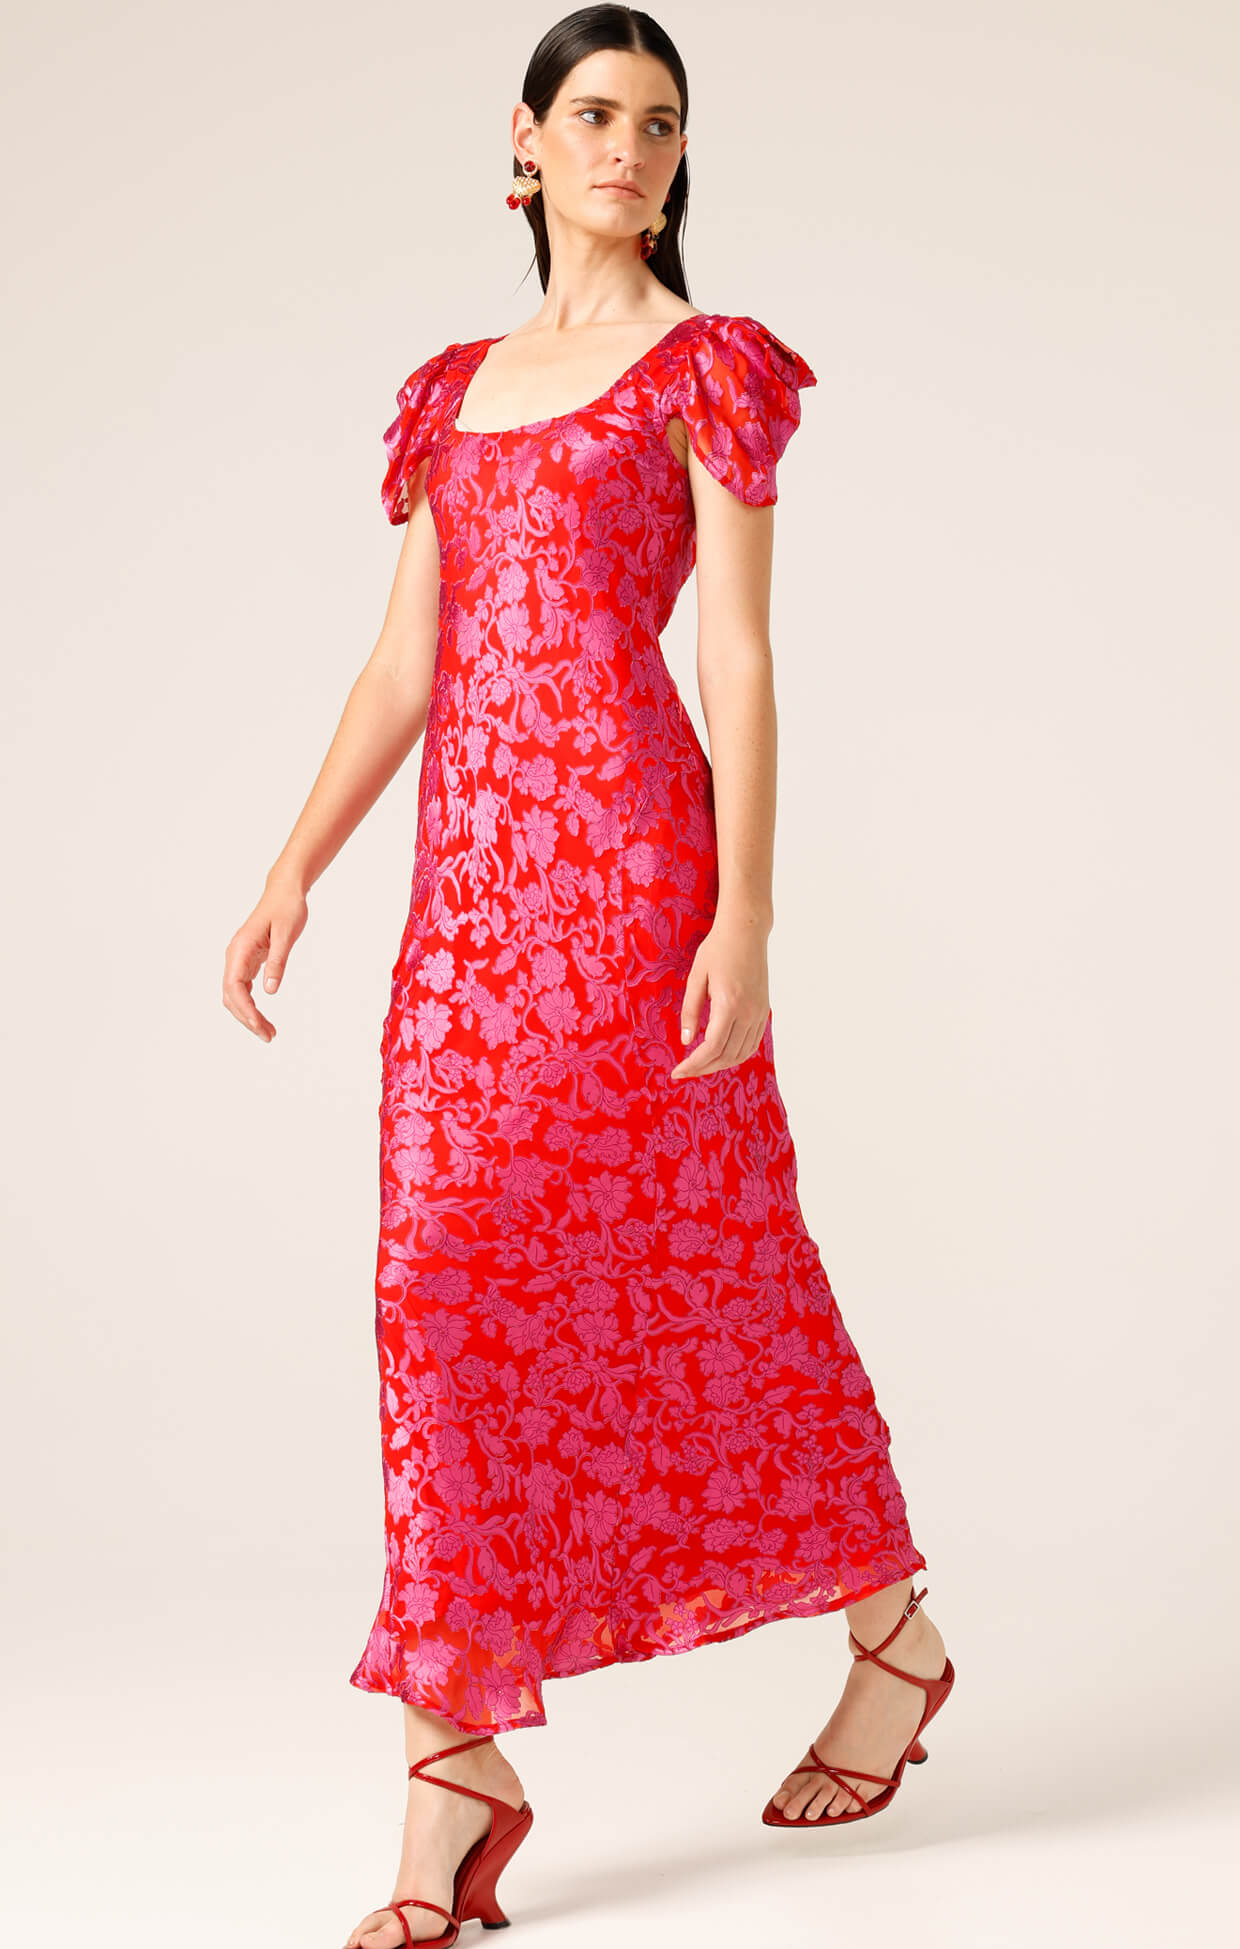 Firebird Dress